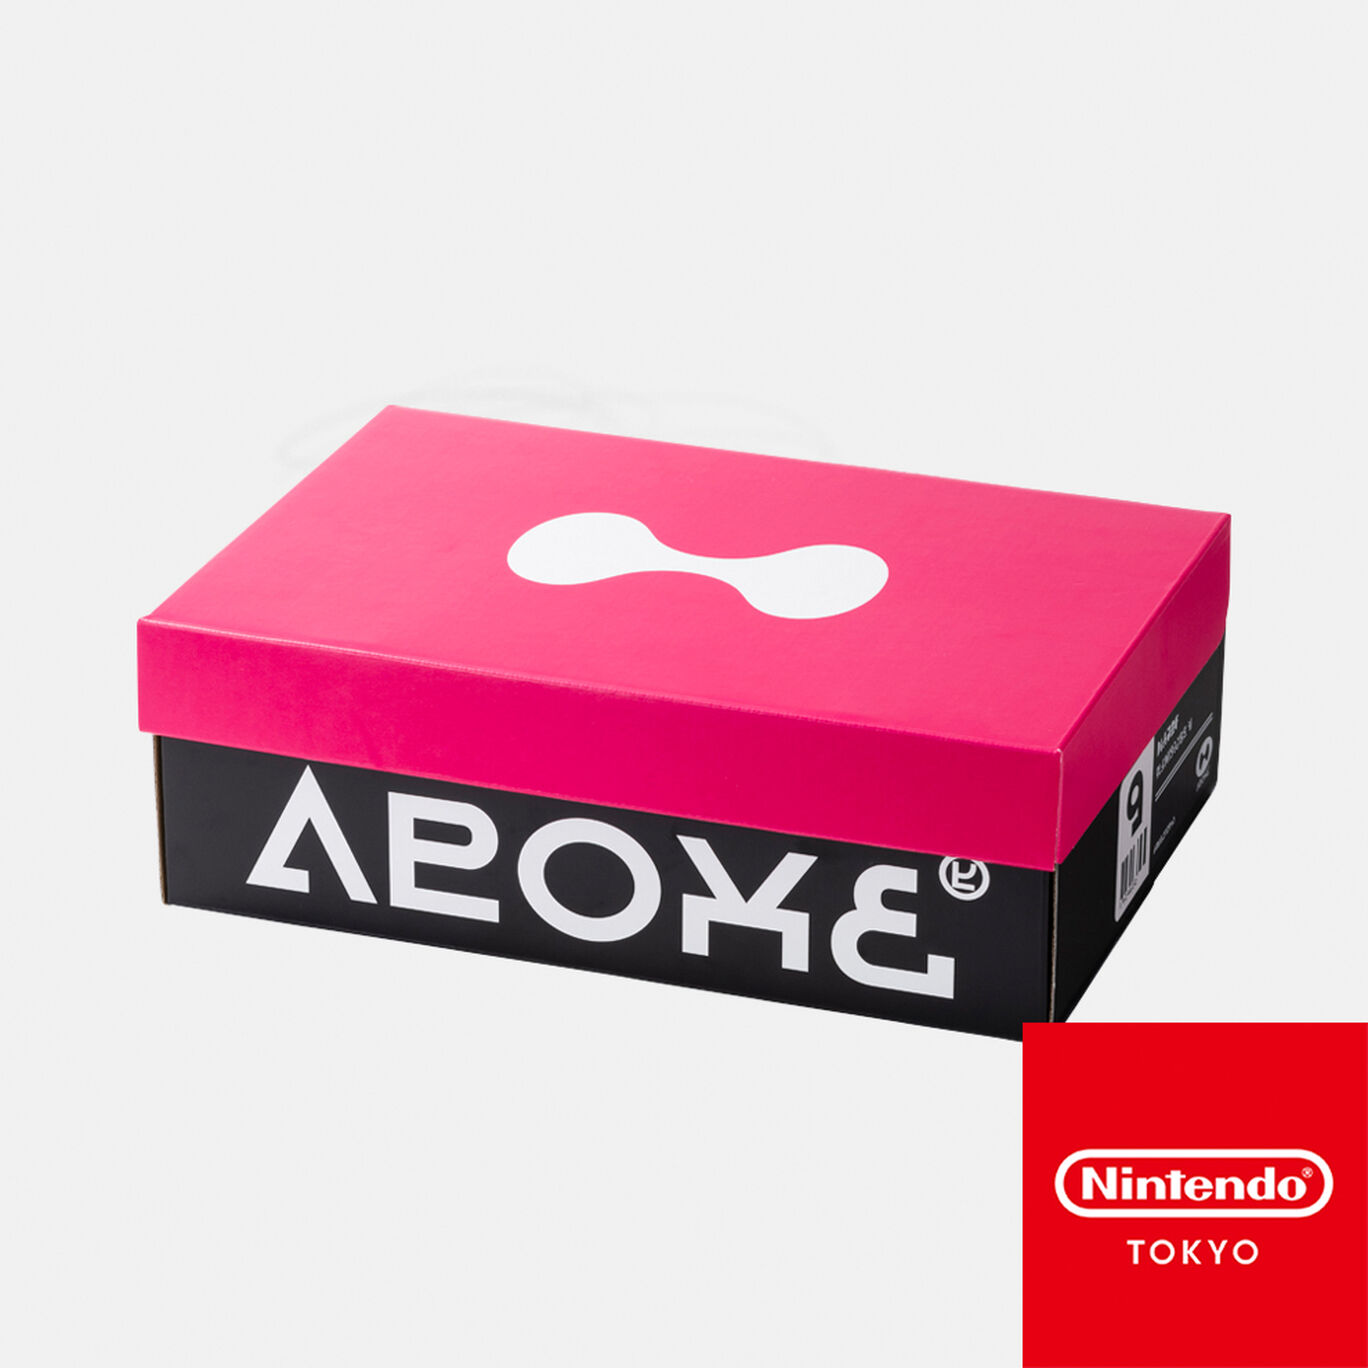 シューズボックス風収納BOX CROSSING SPLATOON C【Nintendo TOKYO取り扱い商品】